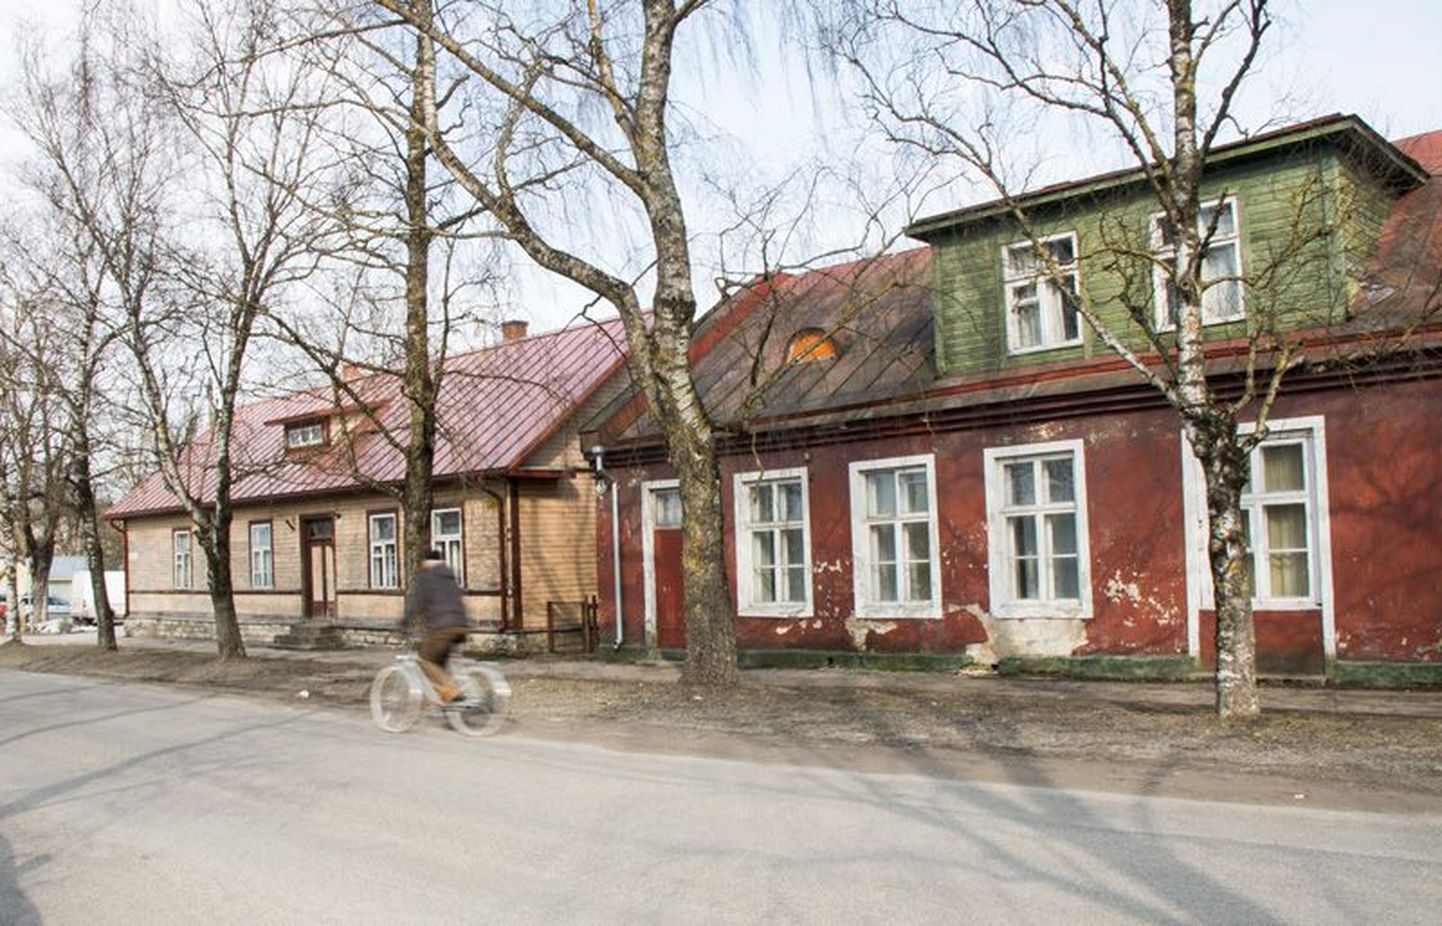 Rakvere Narva tänava majades nr 7 ja 9 tehakse peagi kapitaalremont ning need saavad koduks 24 praegusele Lille Kodu elanikule, kel uutes oludes rohkem võimalust iseseisvumiseks.